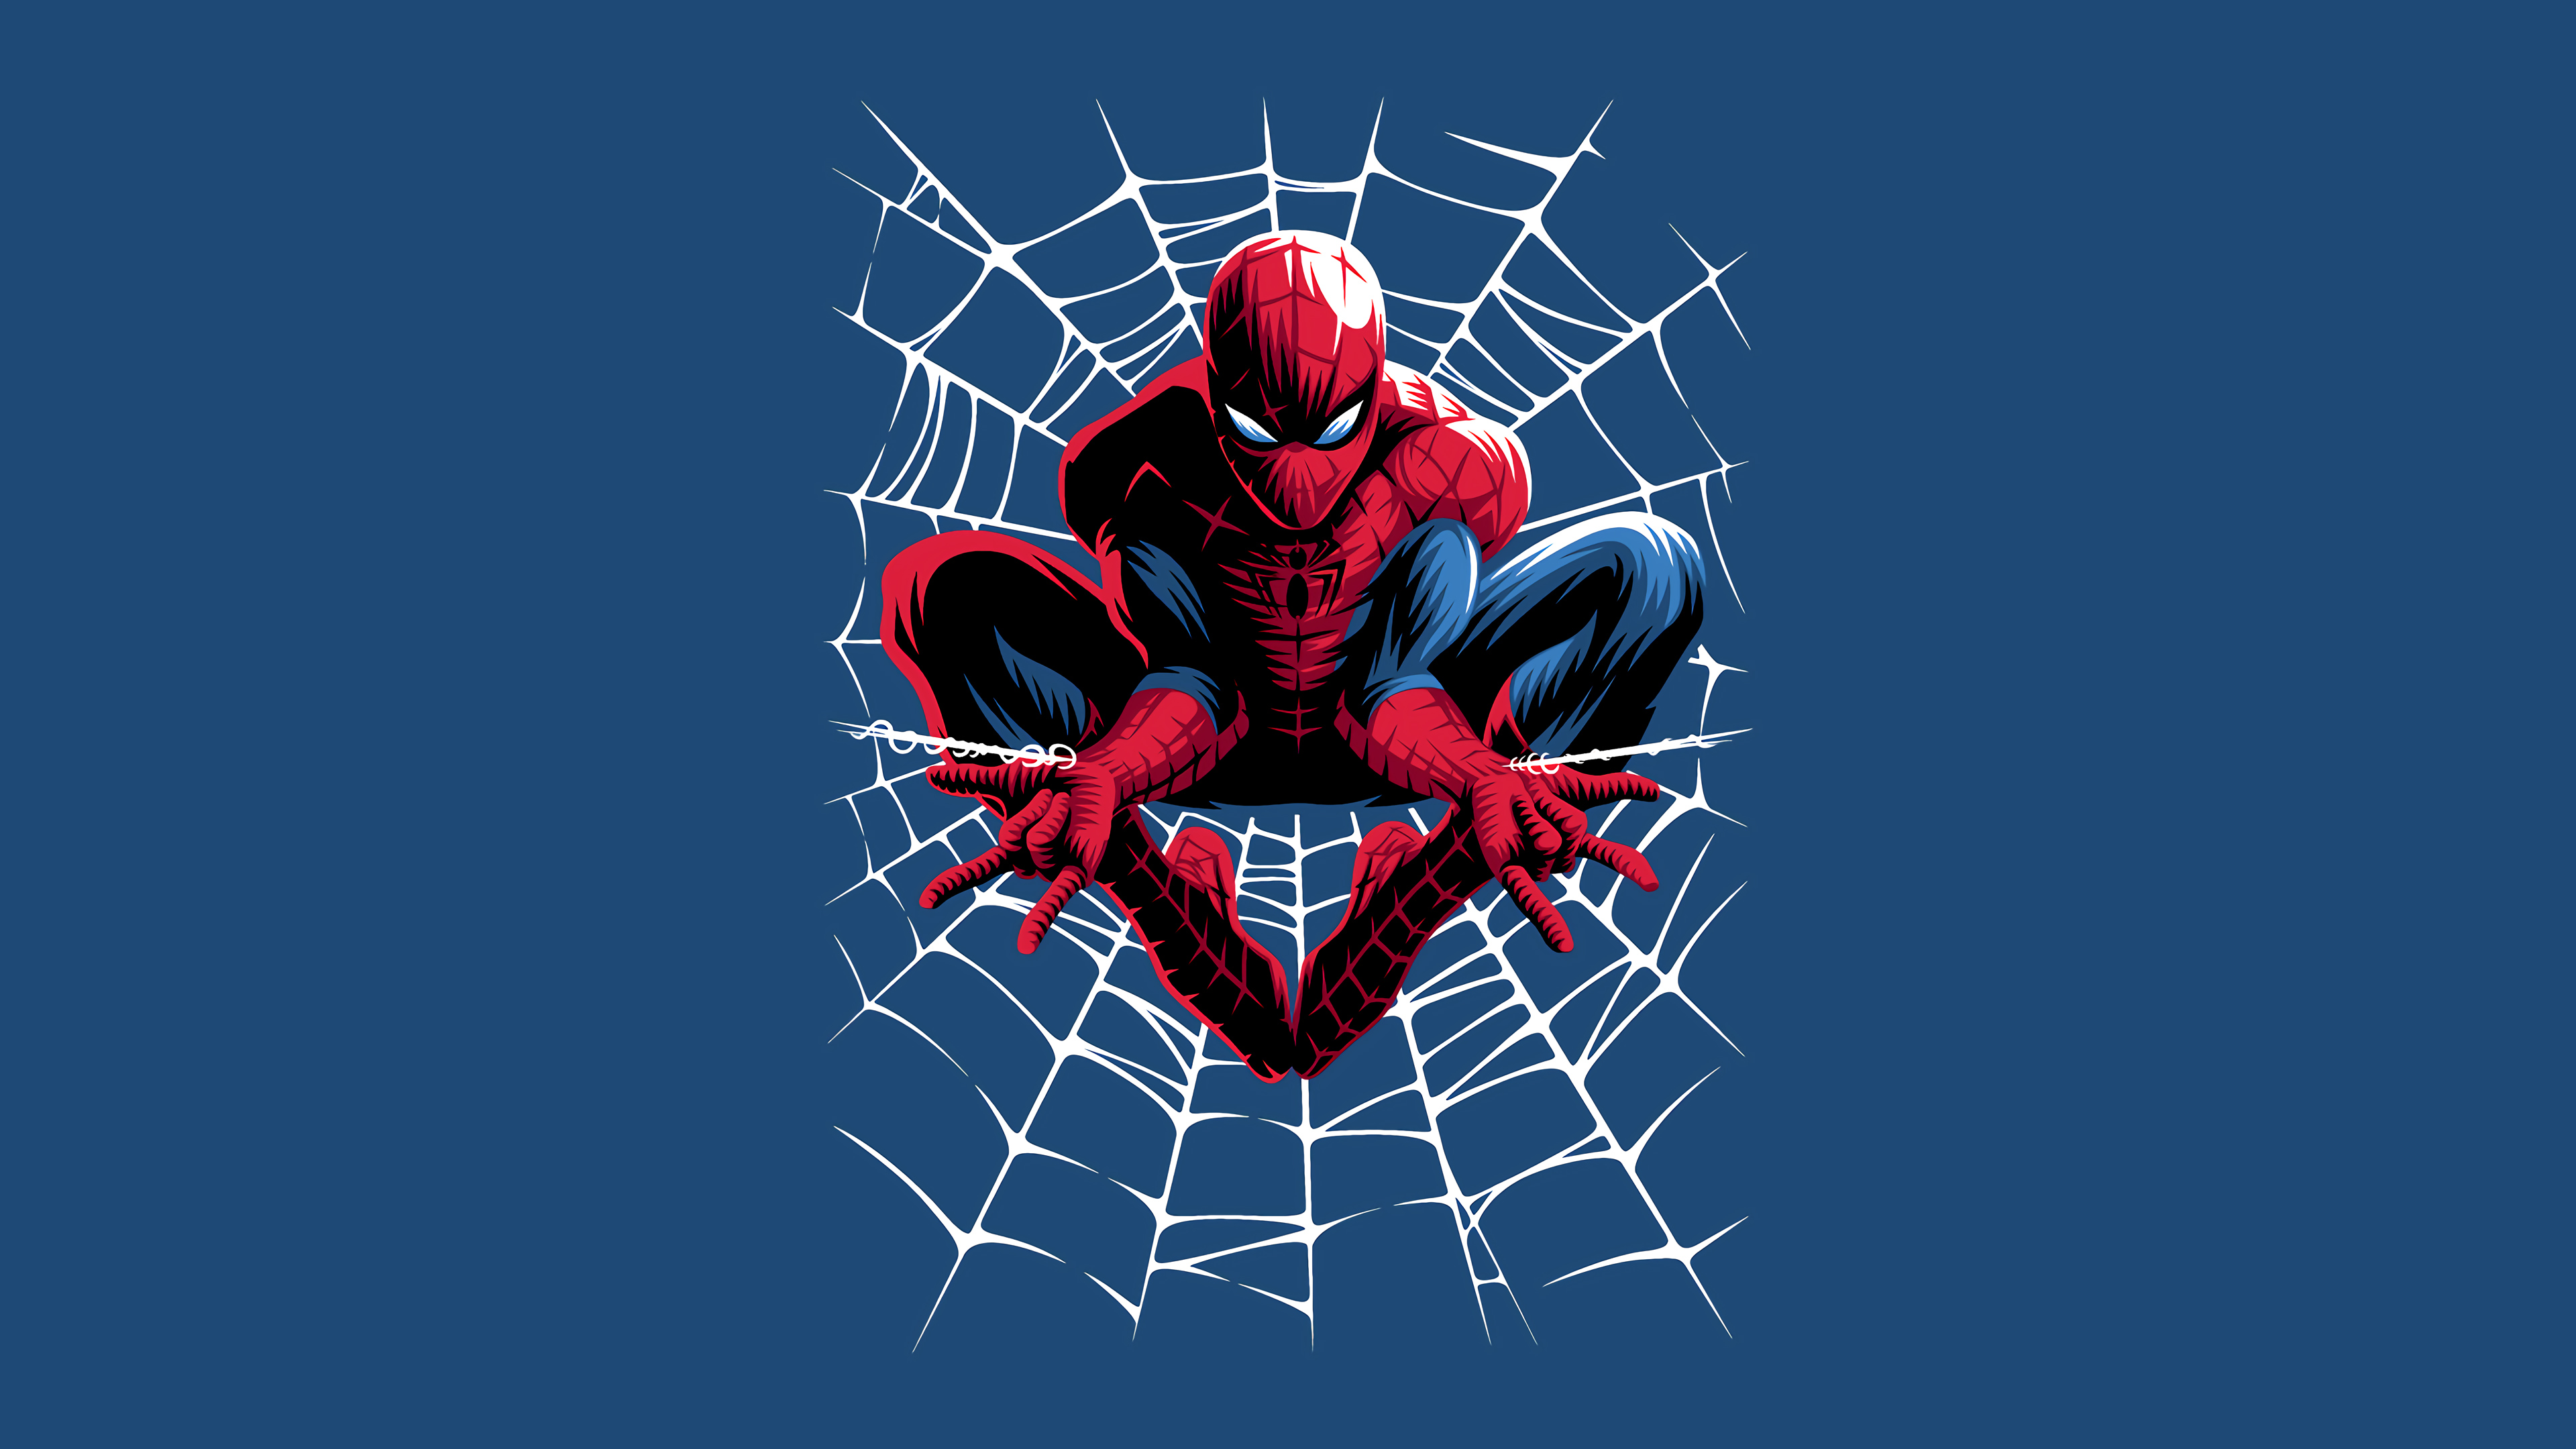 Человек паук на Красном фоне